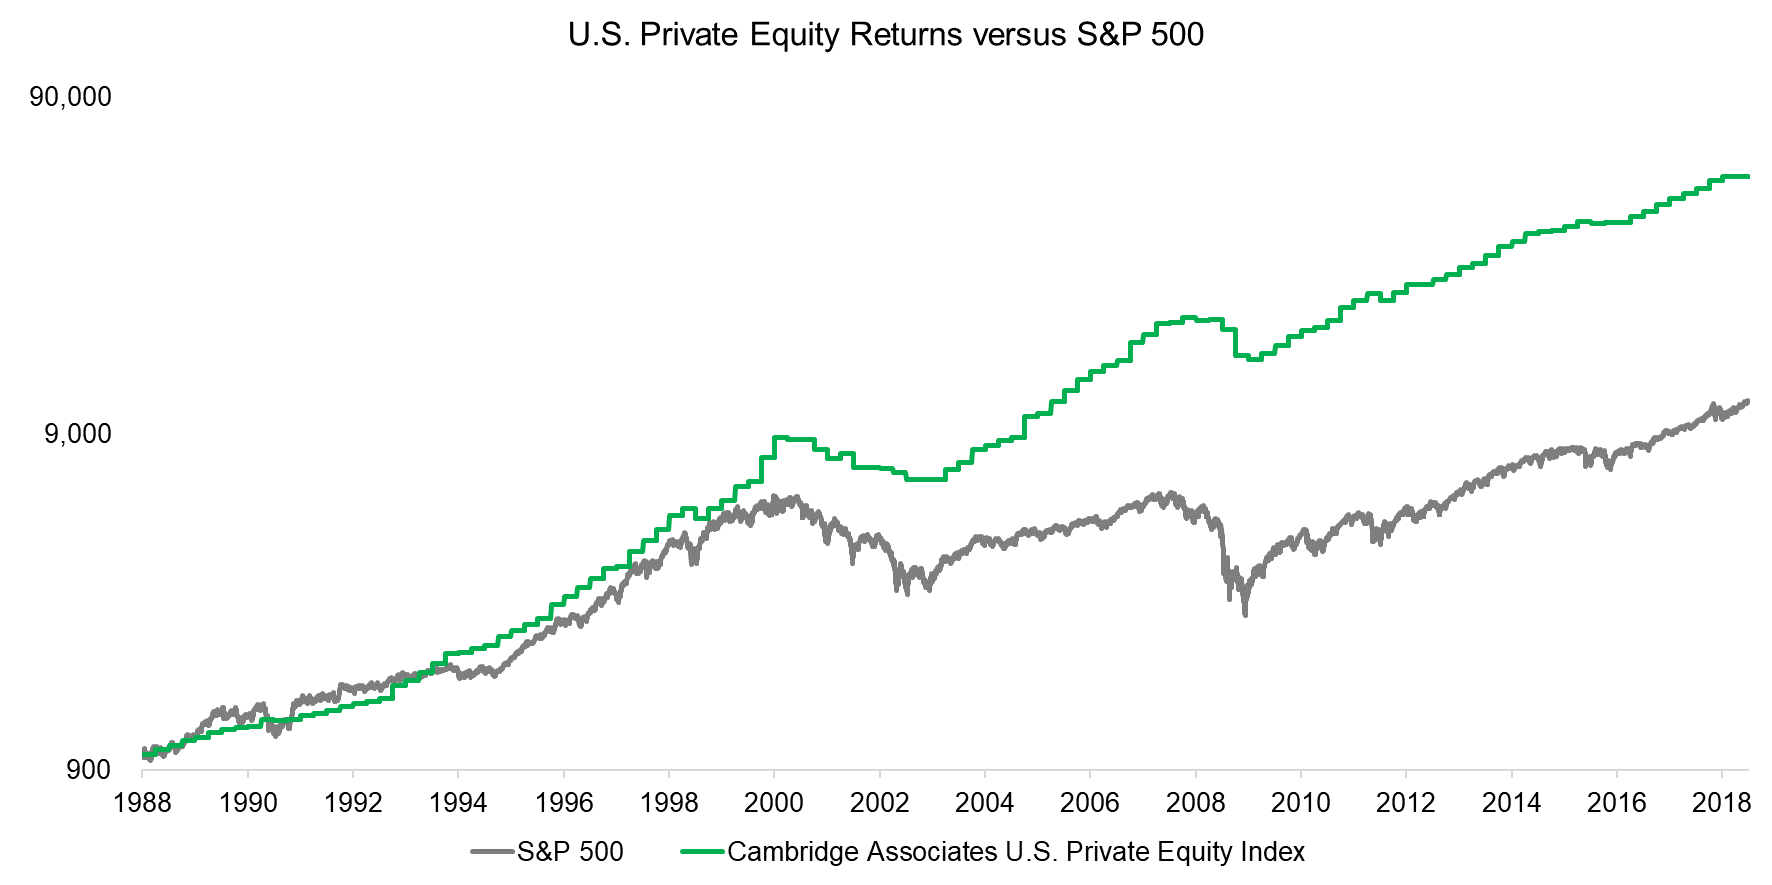 U.S. Private Equity Returns versus S&P 500